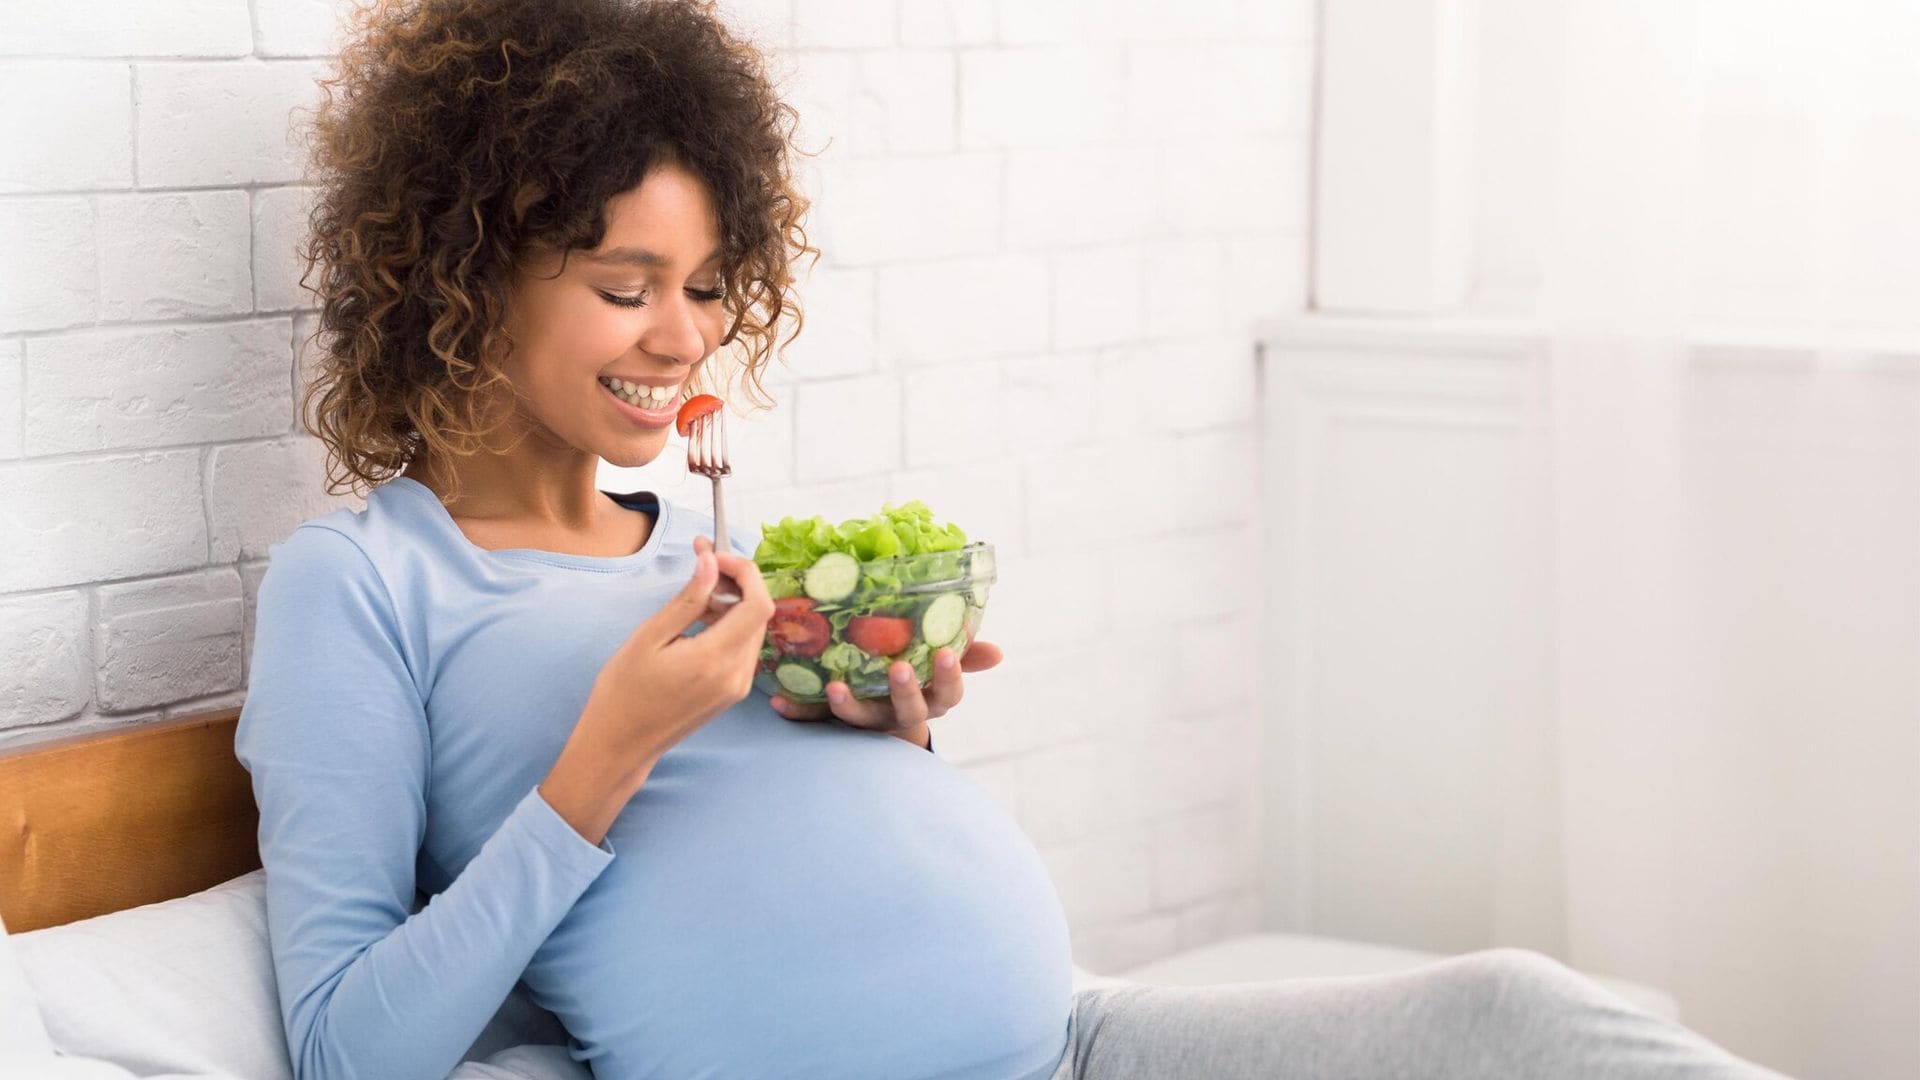 listeriosis y toxoplasmosis en el embarazo